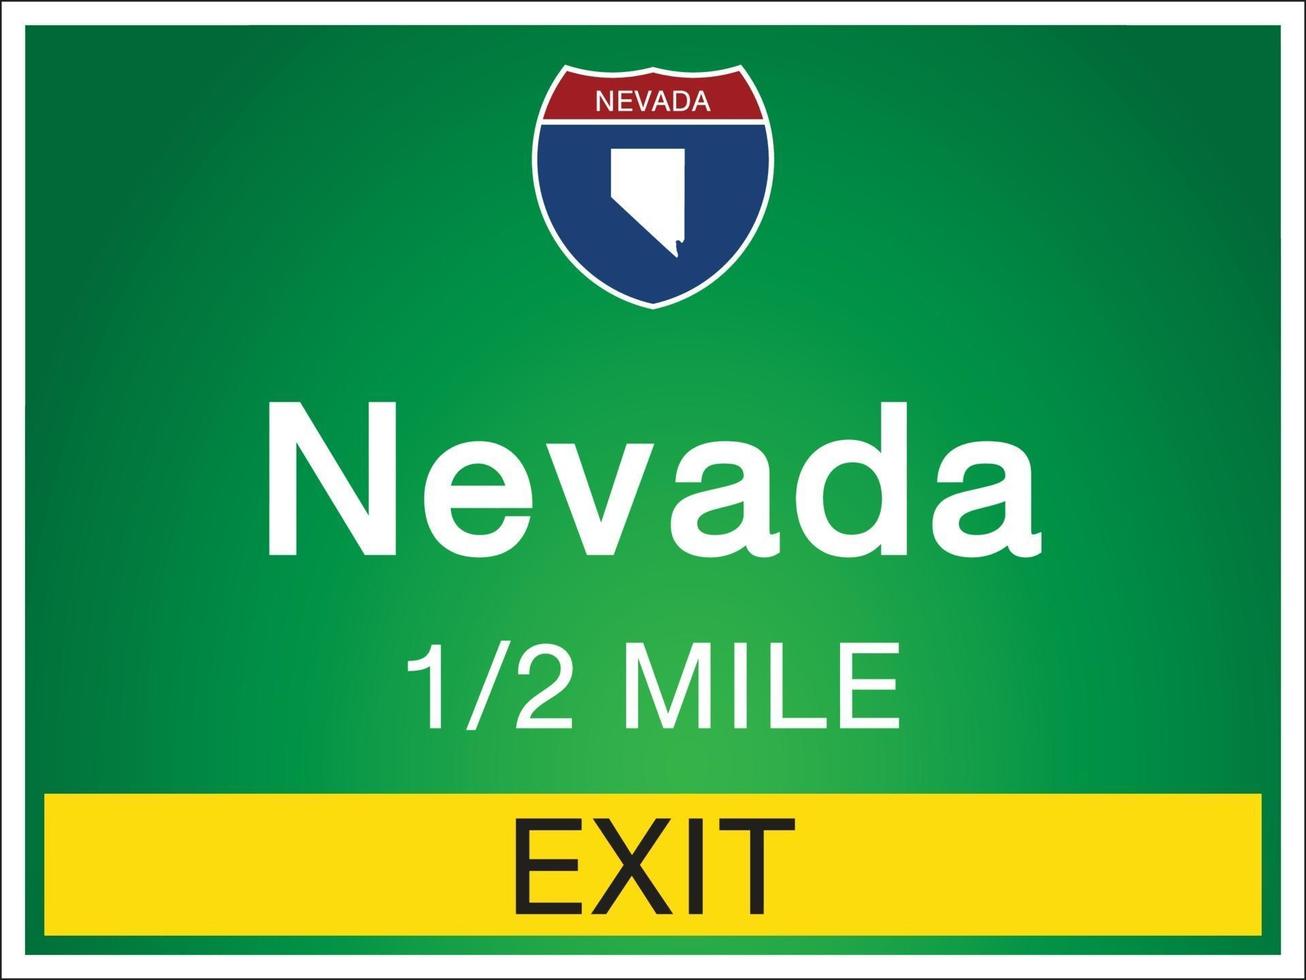 Señalización en la autopista en Nevada de Estados Unidos. vector